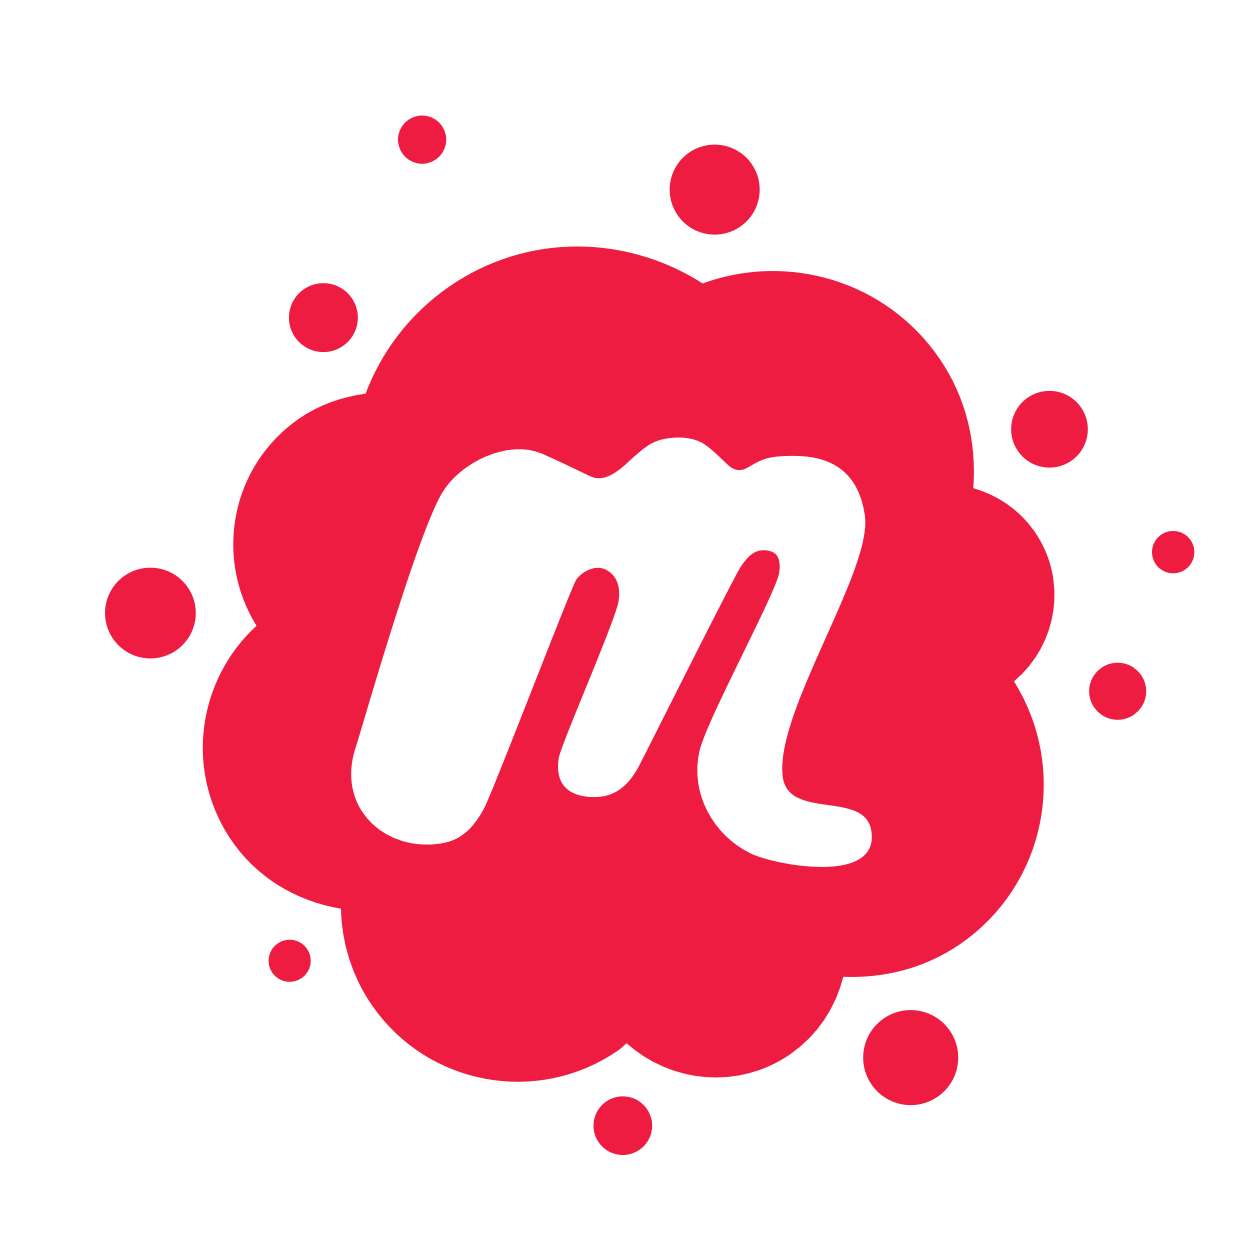 meetup logos